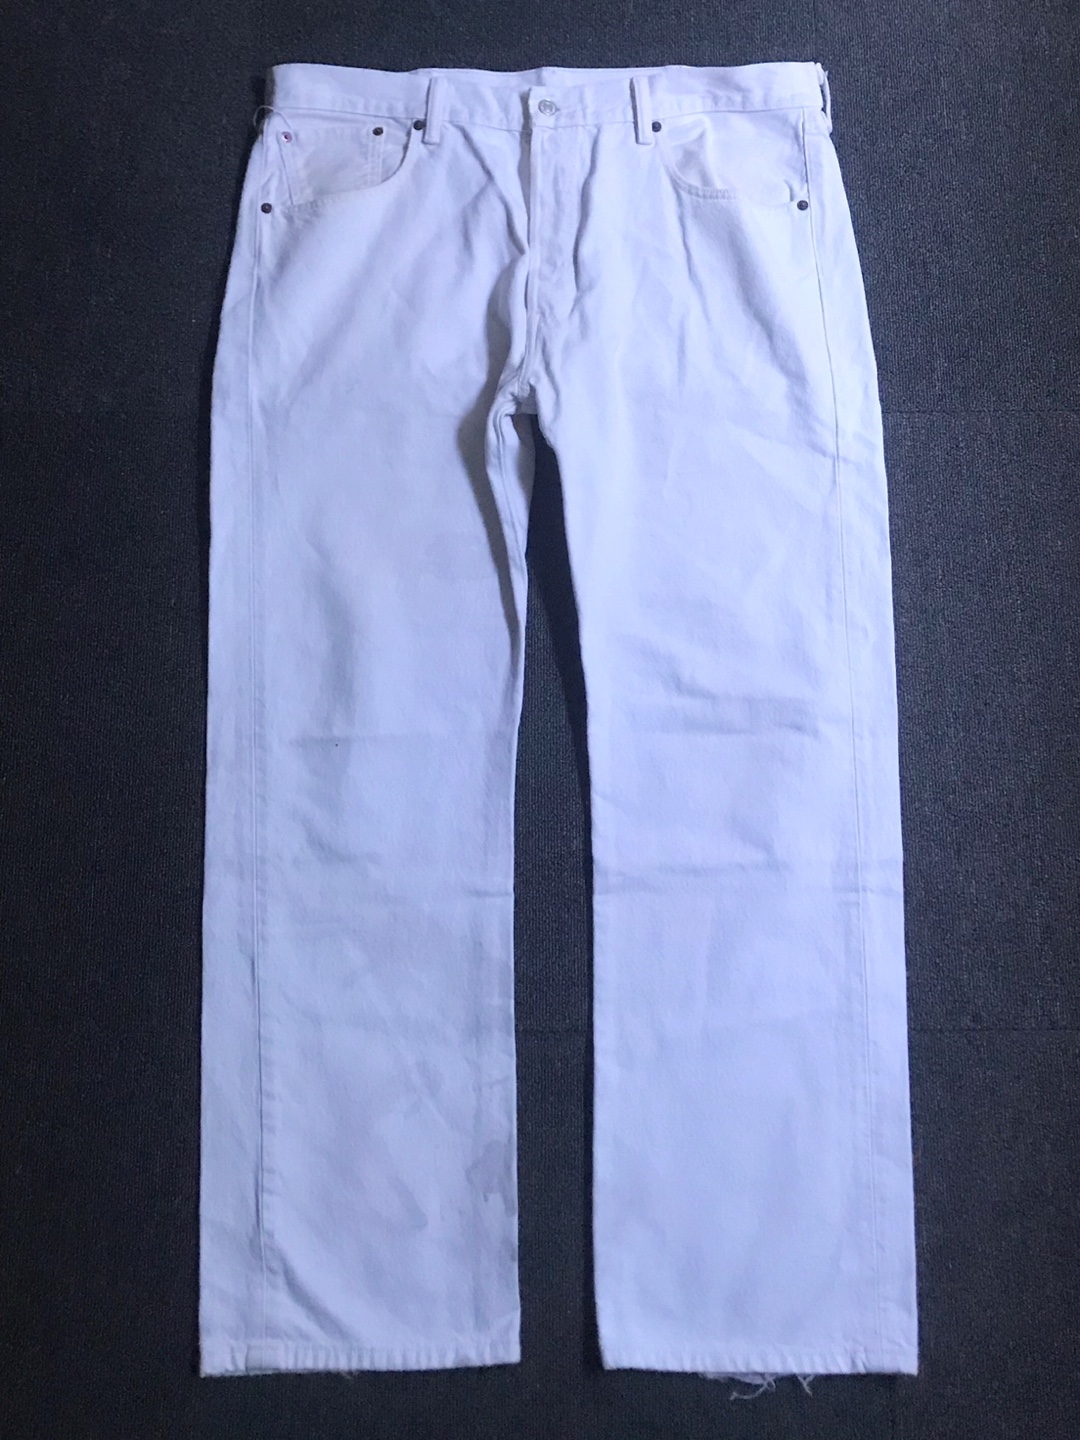 Levis 501 white jeans (38/30 size,